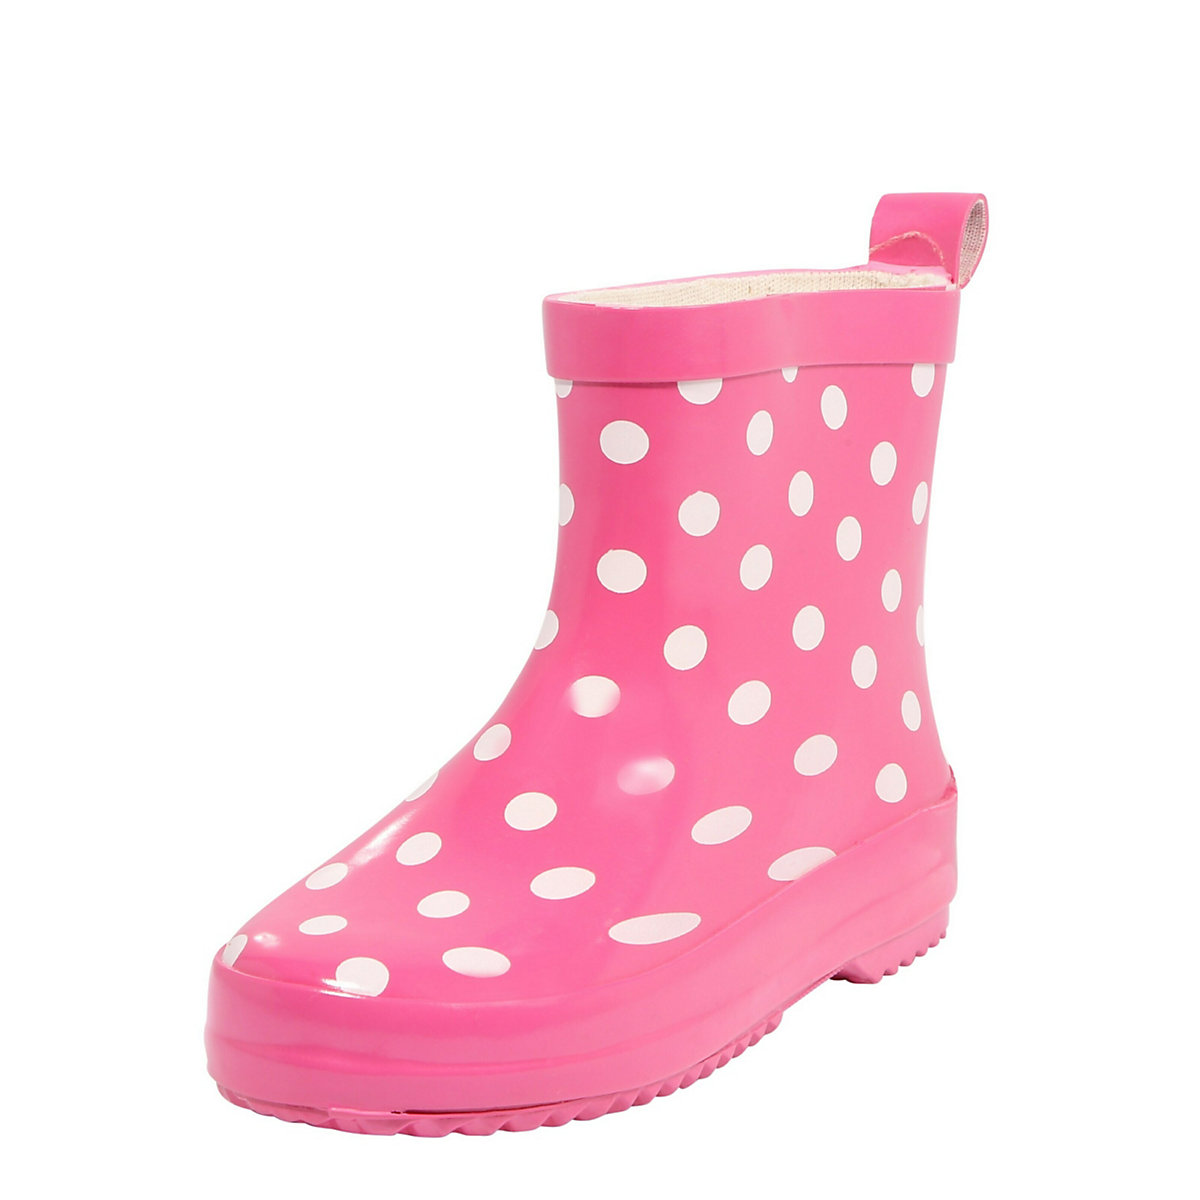 Playshoes Gummistiefel für Kinder pink/weiß